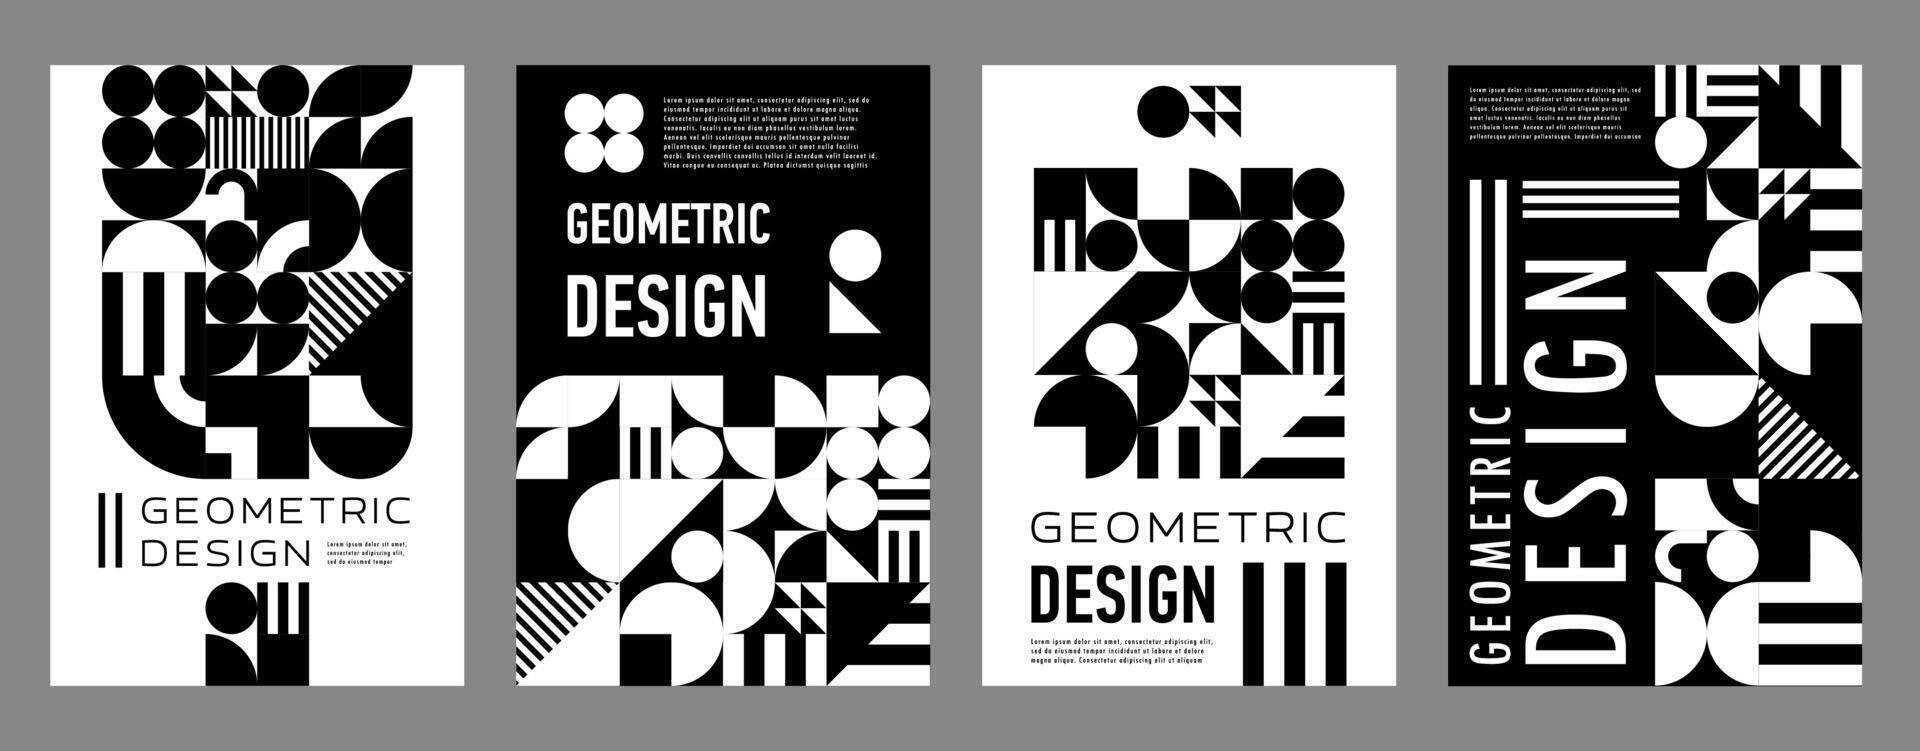 abstrakt svartvit modern geometrisk stil affisch vektor